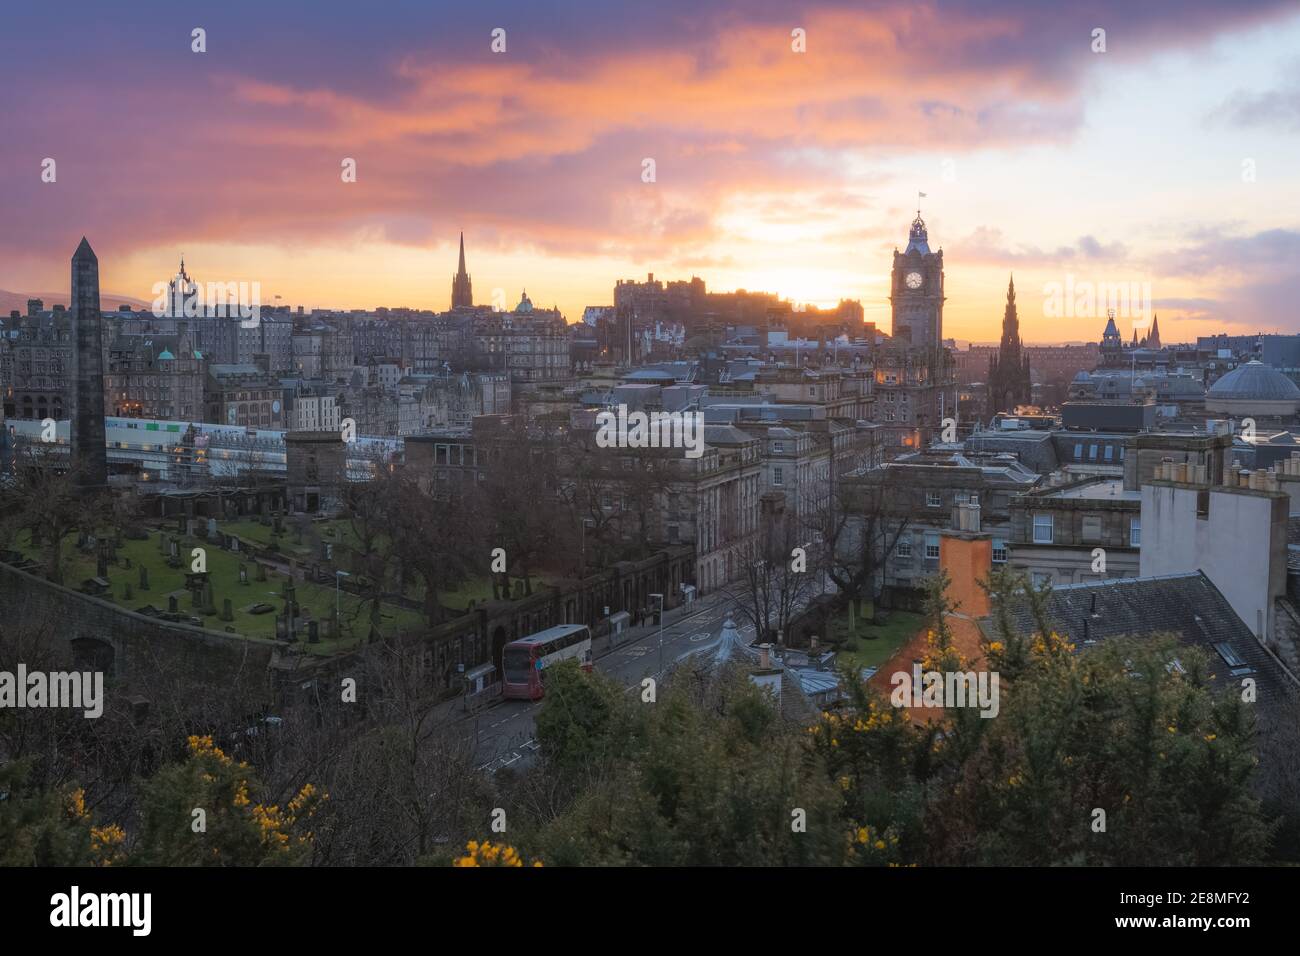 Vista panoramica dello skyline della città vecchia di Edimburgo, Princes Street, la Torre dell'orologio Balmoral e il Castello di Edimburgo dalla collina di Calton con un tramonto spettacolare nella Foto Stock